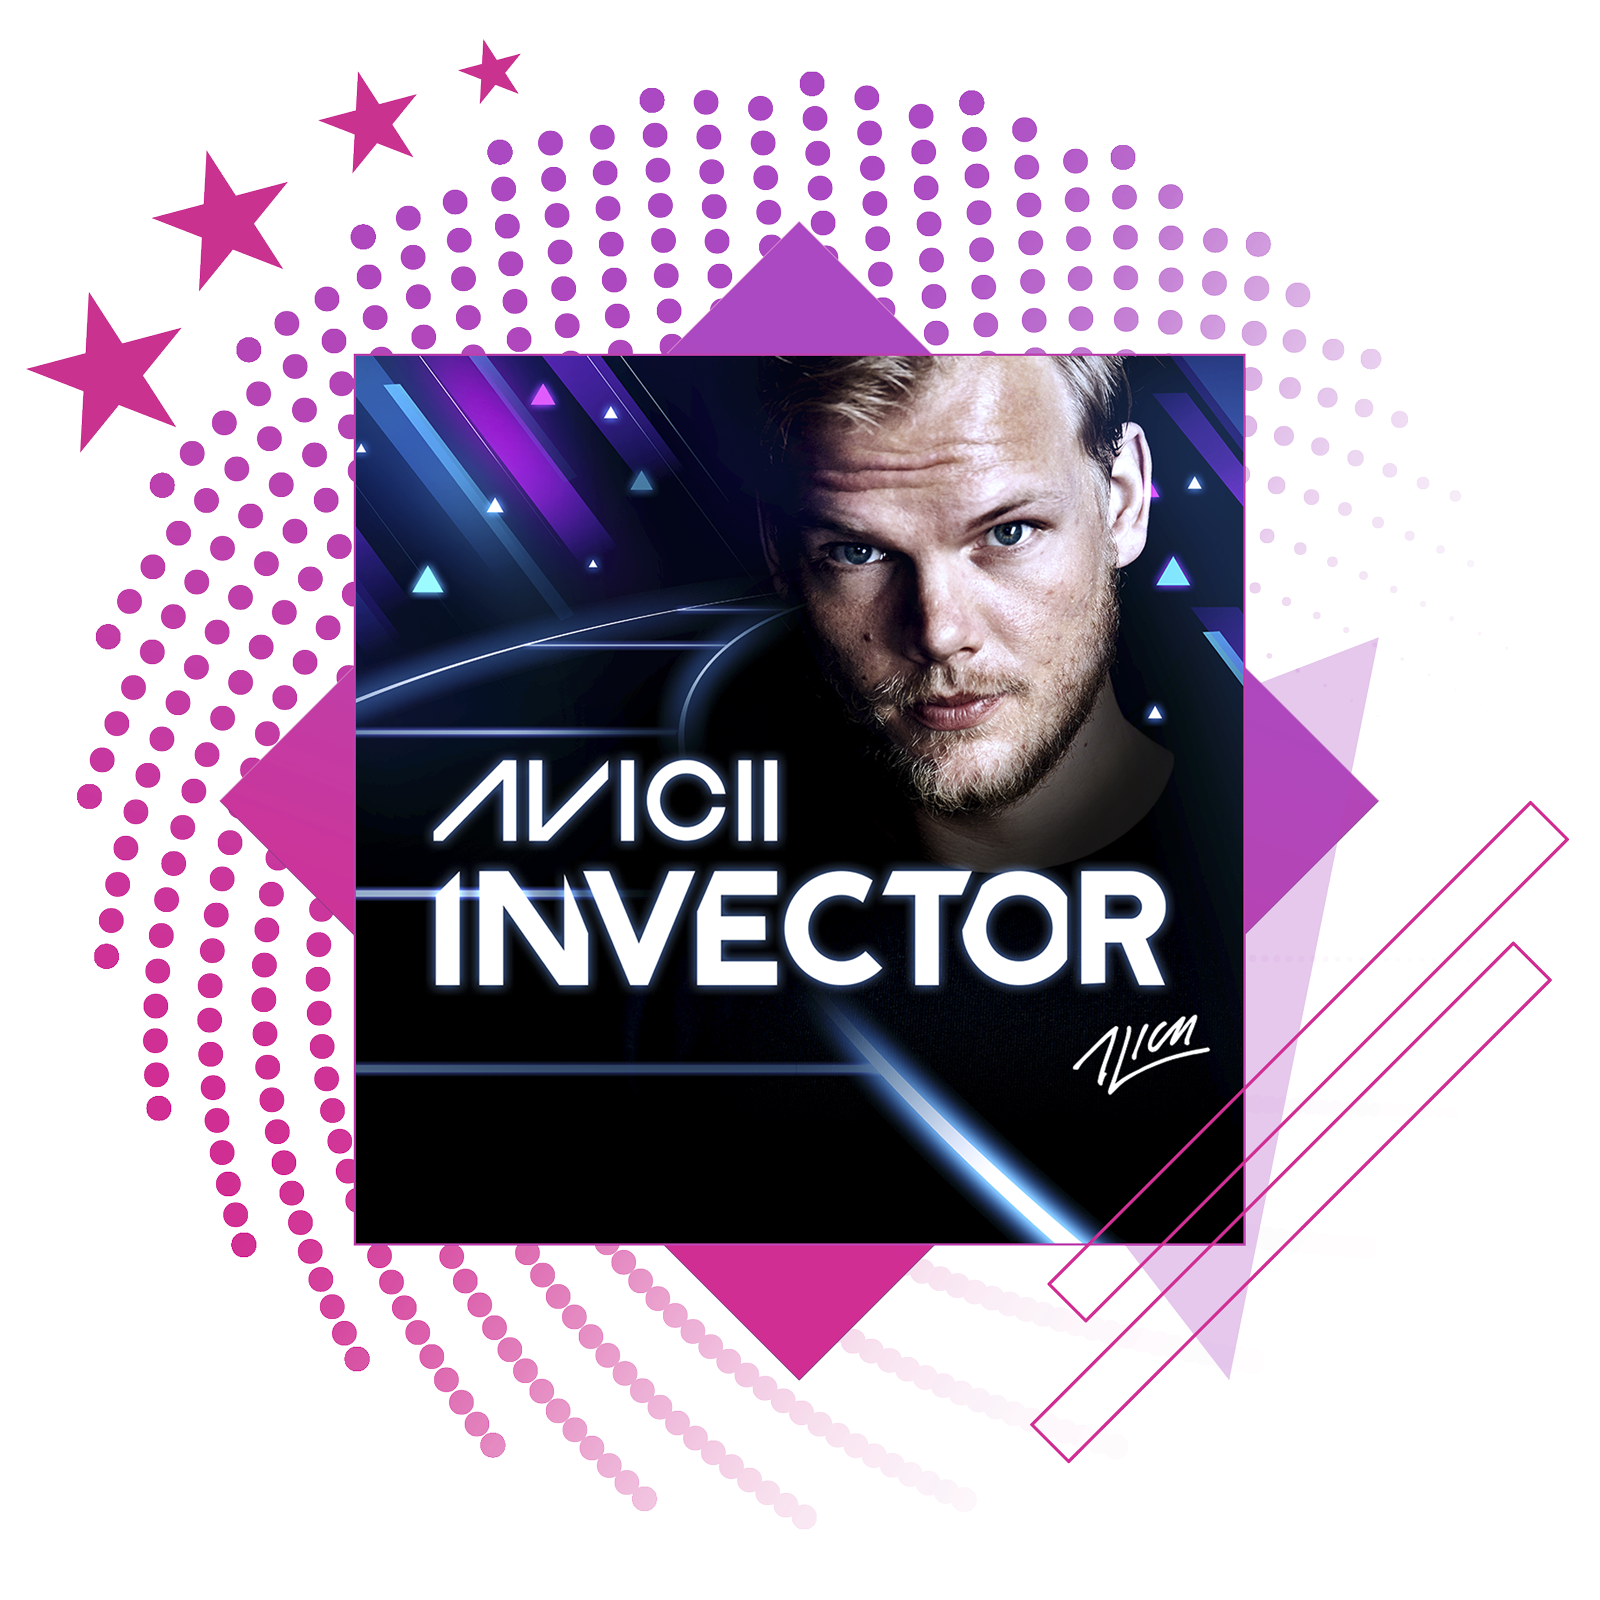 Image de présentation des meilleurs jeux de rythme, avec des illustrations et du gameplay clés de Aviici: Invector.